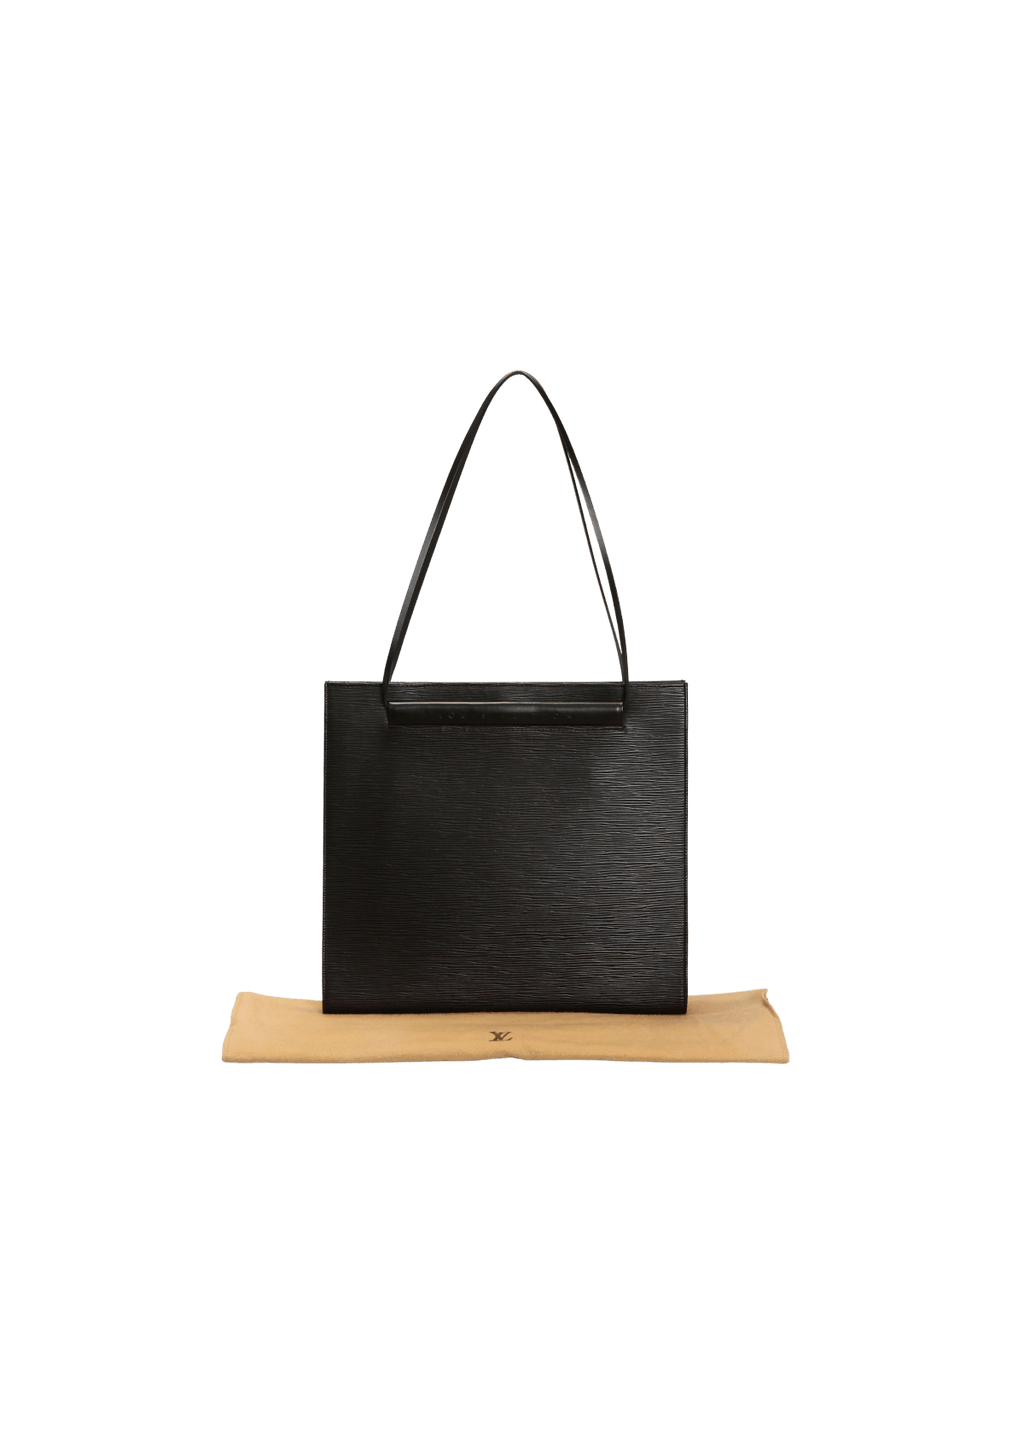 Louis Vuitton Saint Tropez Black Epi Leather Shoulder Bag